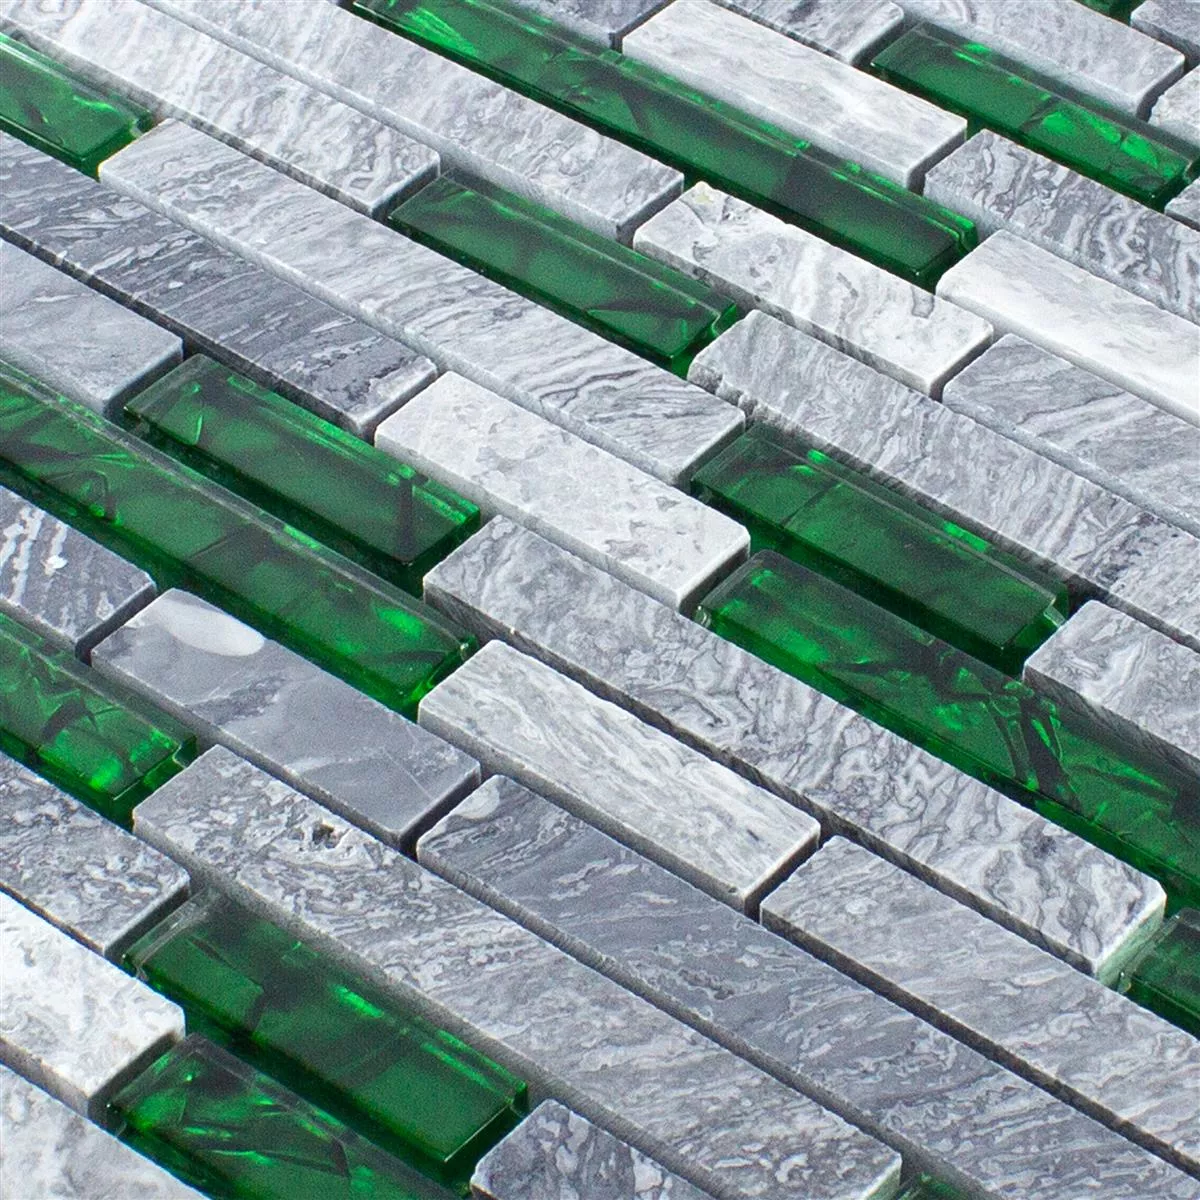 Sample Glass Natural Stone Mosaic Tiles Sinop Grey Green Brick